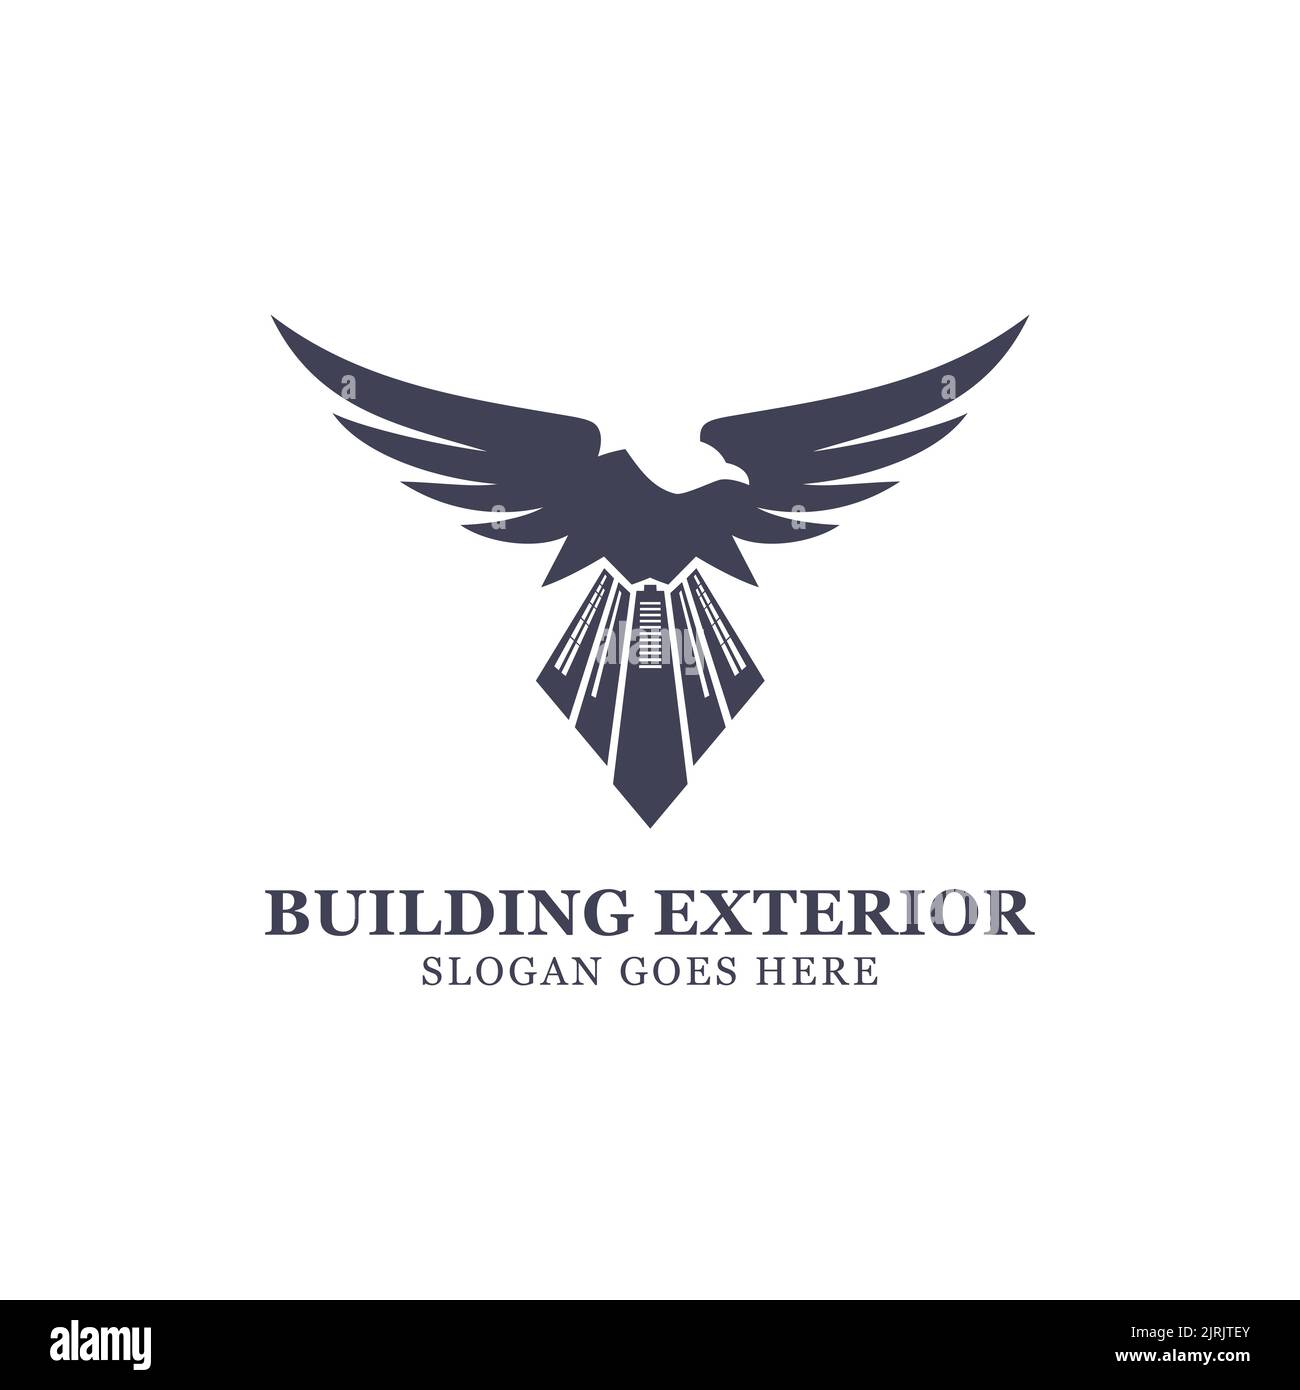 logo extérieur de bâtiment hawk avec une combinaison d'un aigle avec un bâtiment comme sa queue, très bon pour le logo de la société de bâtiment, la construction immobilière Illustration de Vecteur